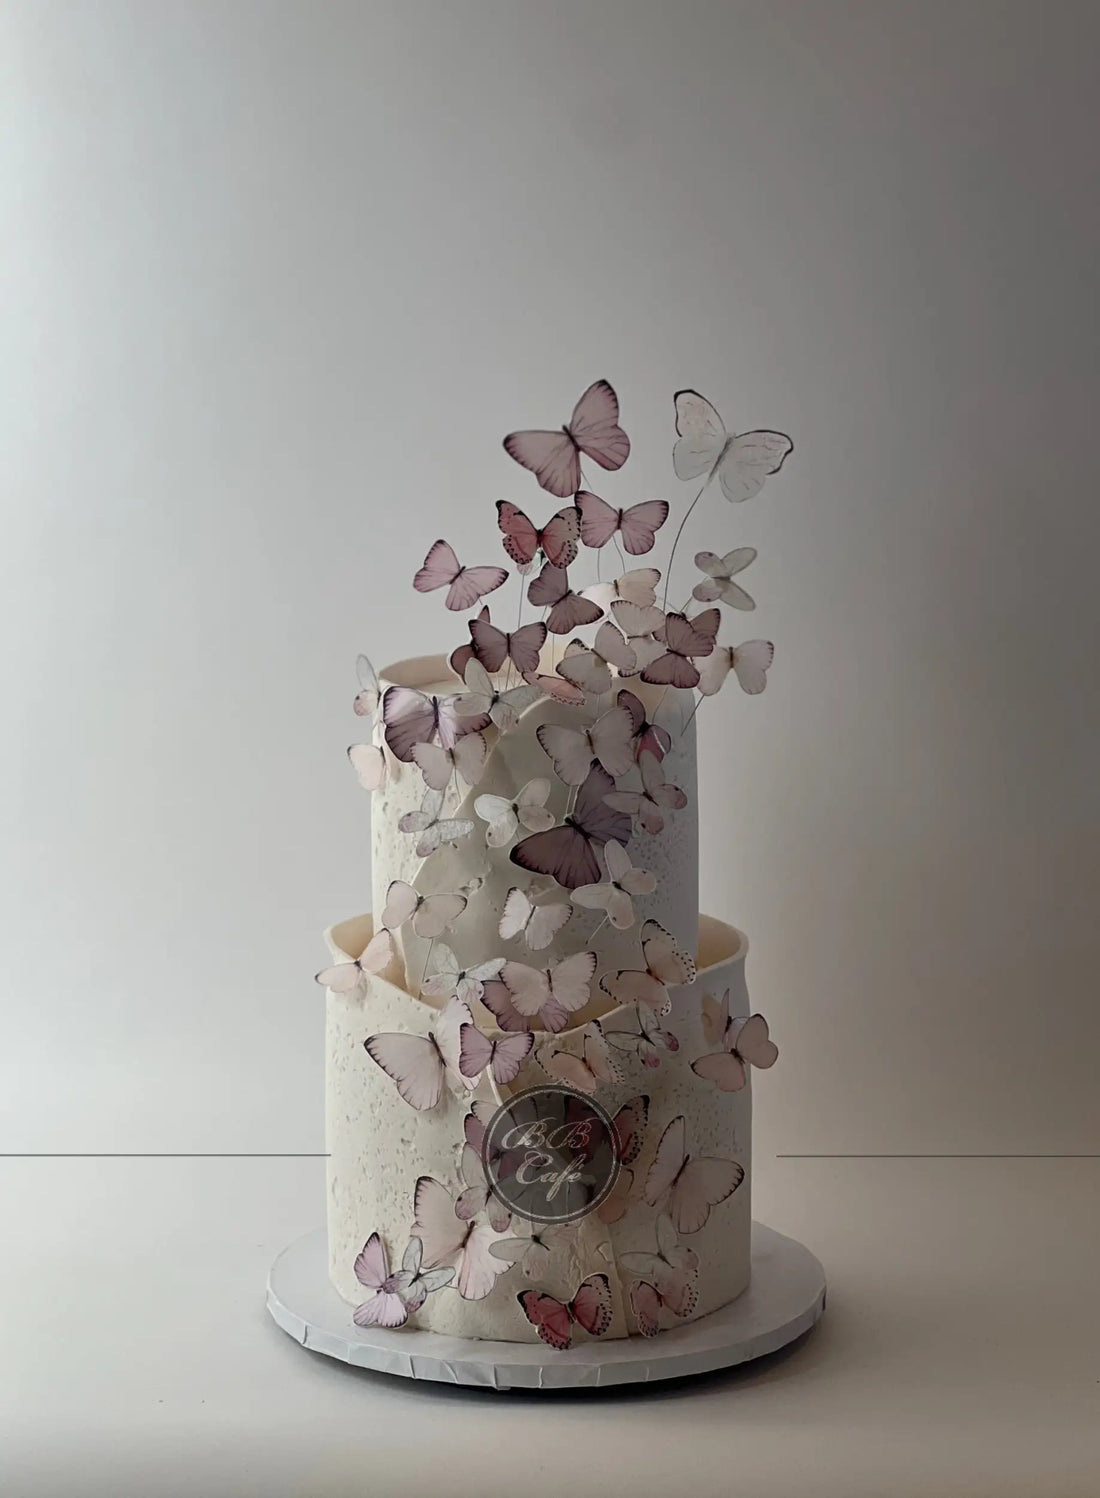 Flight of the butterflies - wedding cake